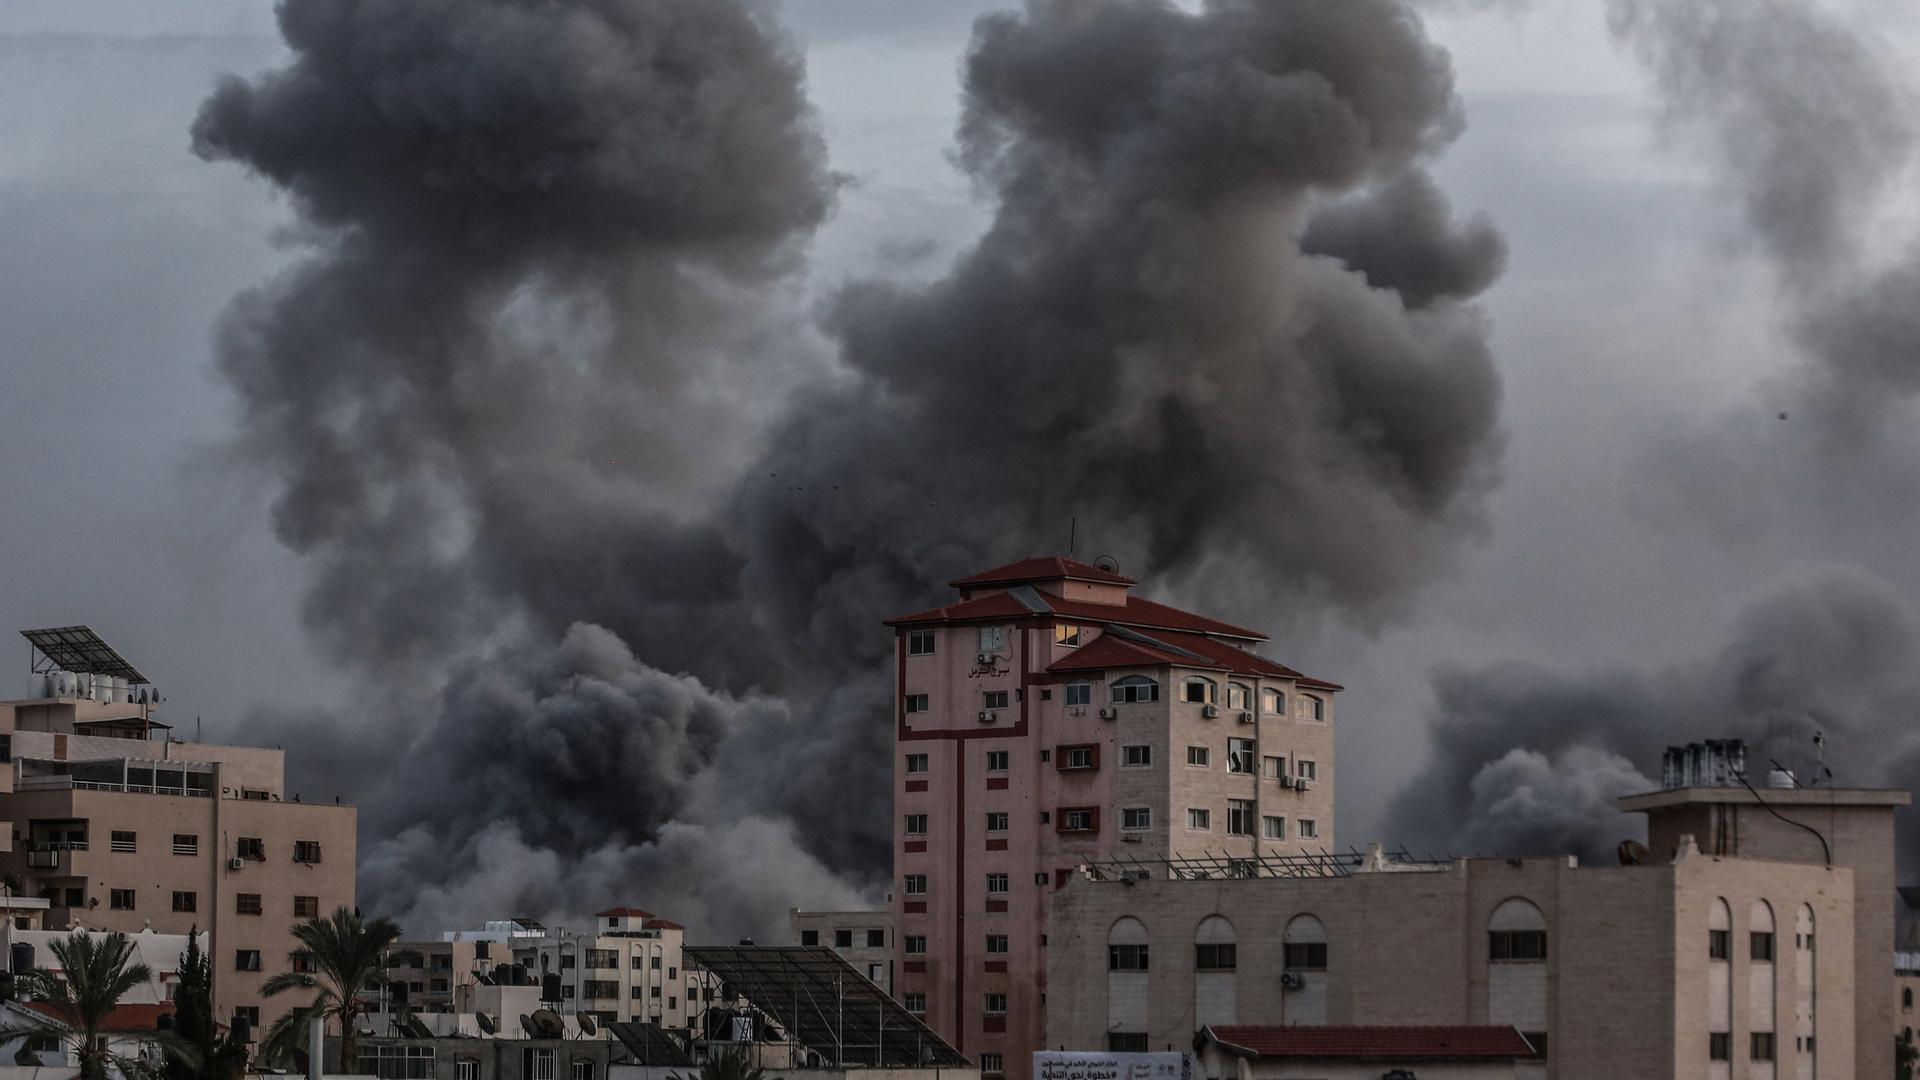 Palästinensische Gebiete, Gaza: Rauch steigt nach einem israelischen Luftangriff auf Gaza auf. Israel hat als Reaktion auf den massiven Angriff durch die Hamas Luftangriffe im Gazastreifen durchgeführt. 